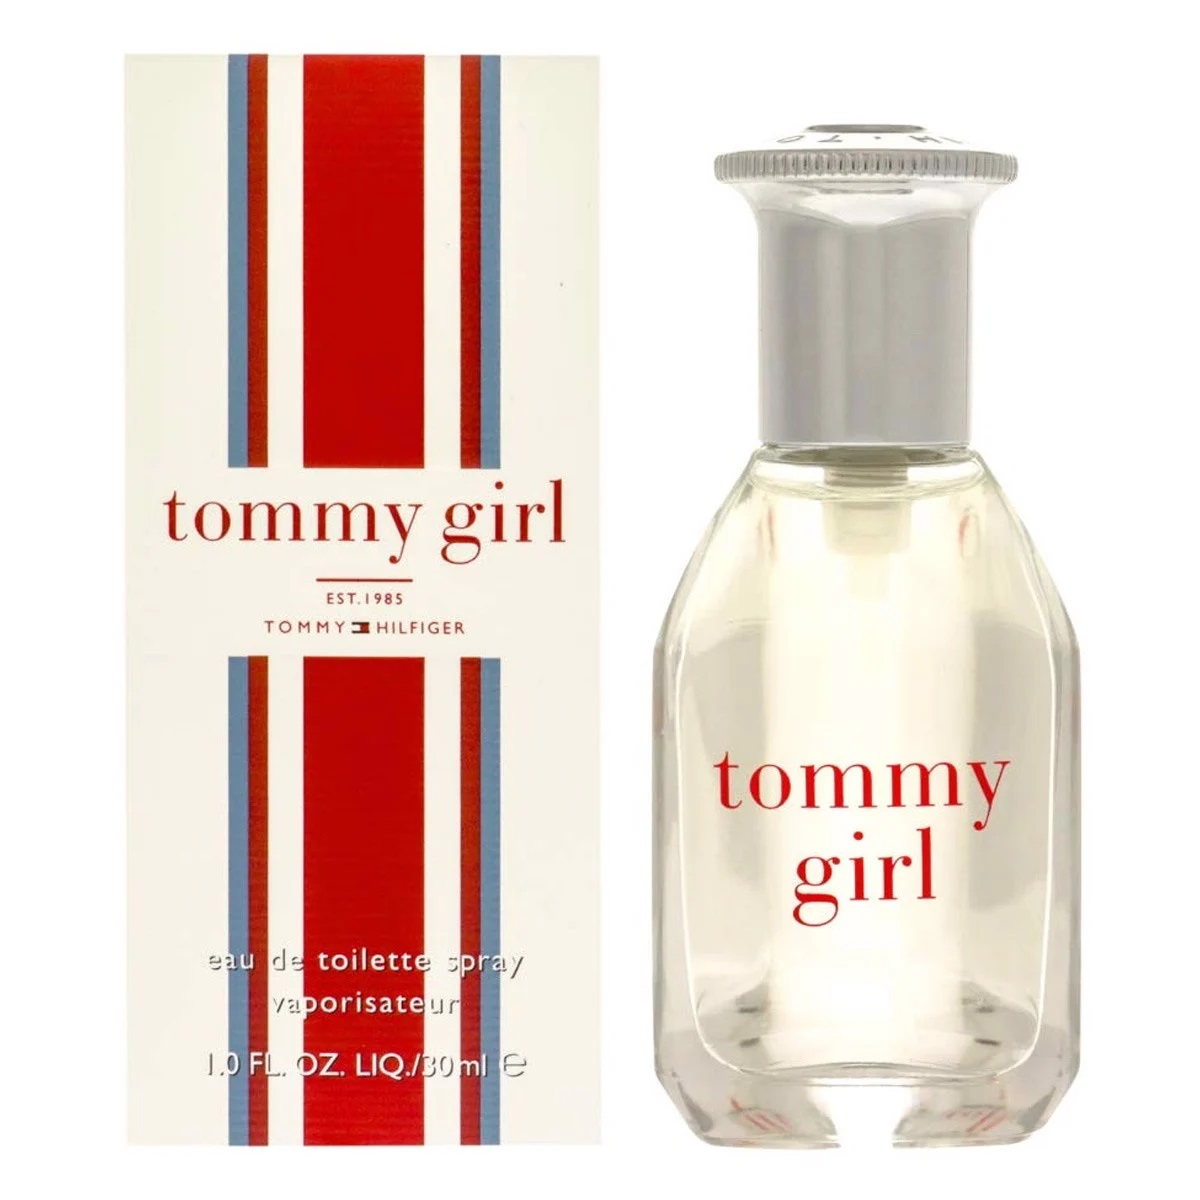 NƯỚC HOA NỮ TOMMY HILFIGER TOMMY GIRL EAU DE TOILETTE 2